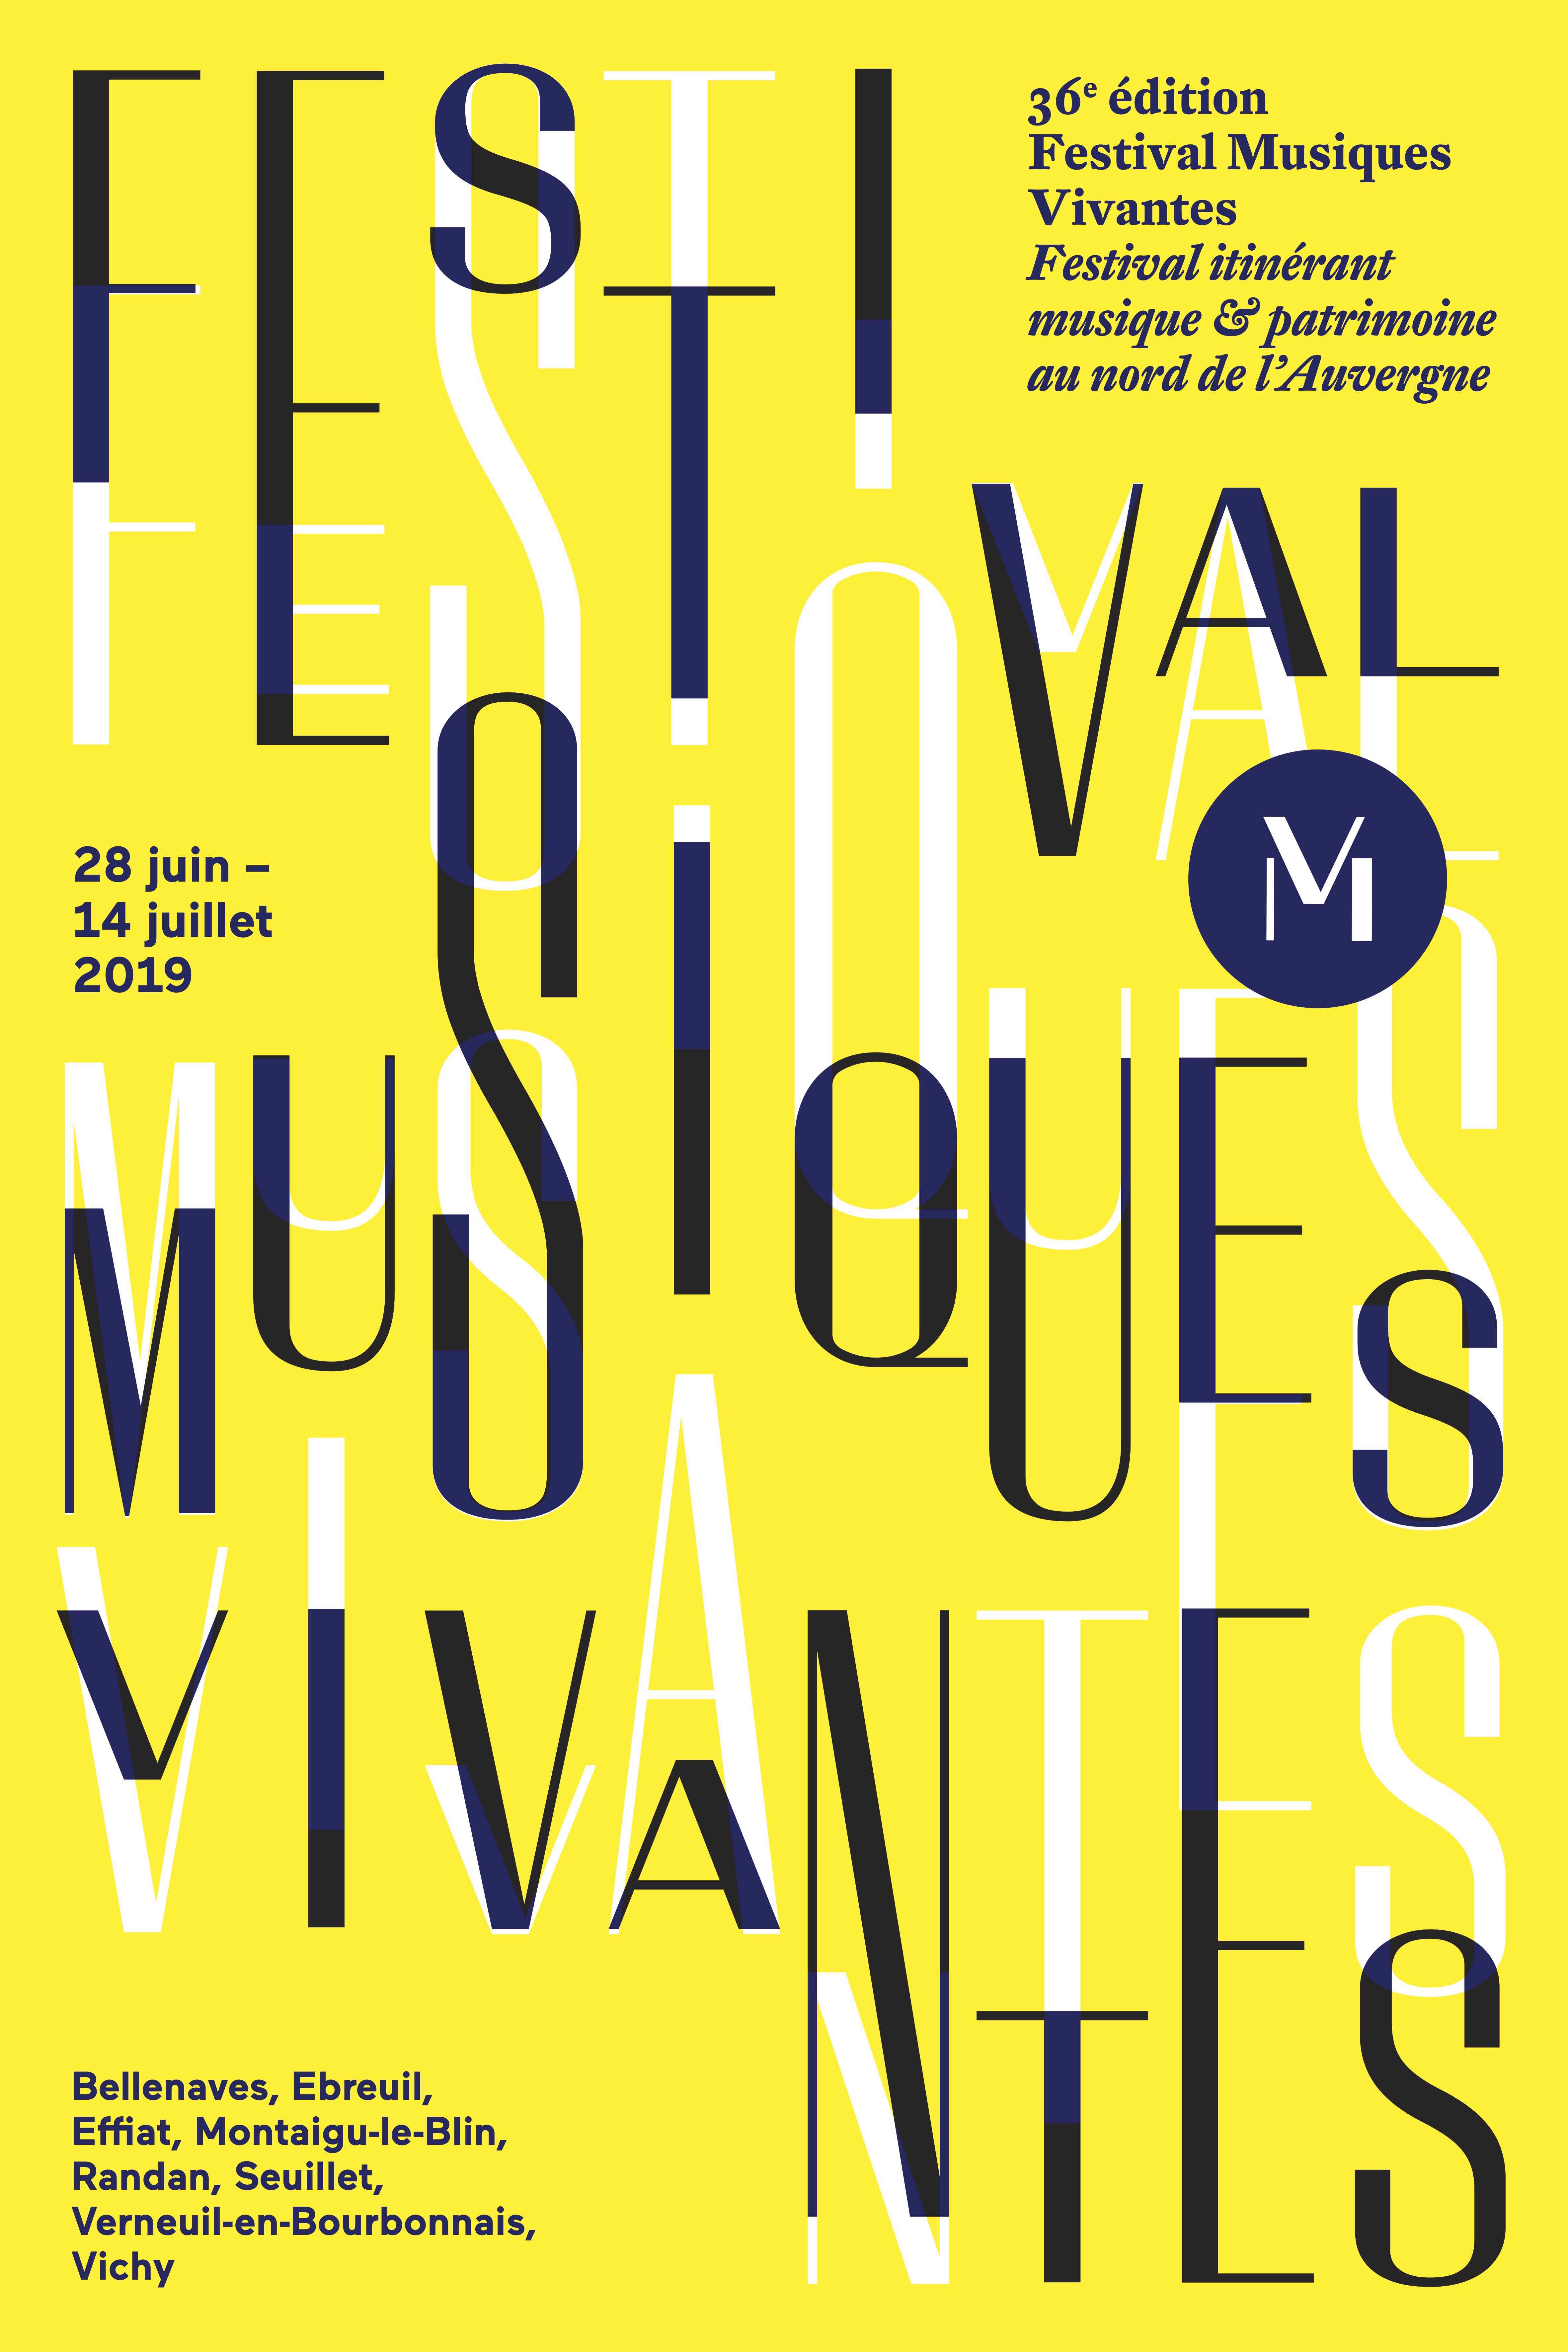 Festival Musiques Vivantes